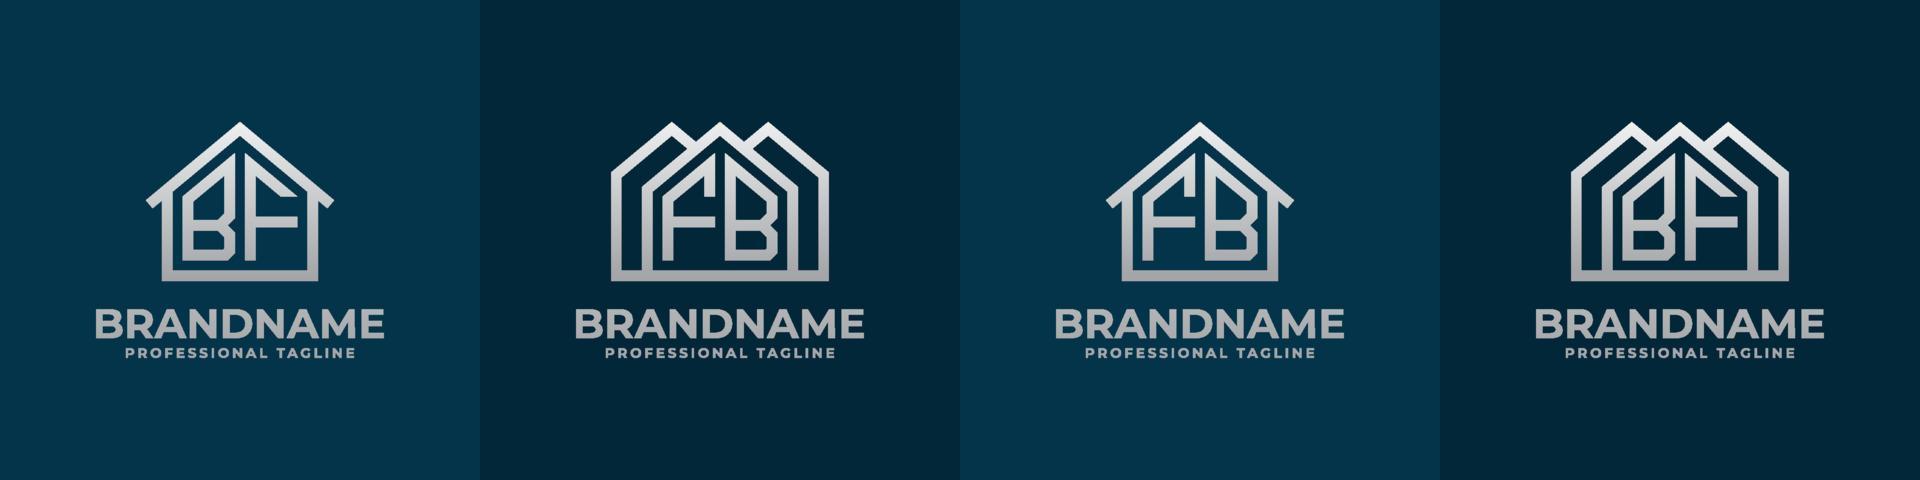 lettre bf et fb Accueil logo ensemble. adapté pour tout affaires en relation à loger, réel domaine, construction, intérieur avec bf ou fb initiales. vecteur